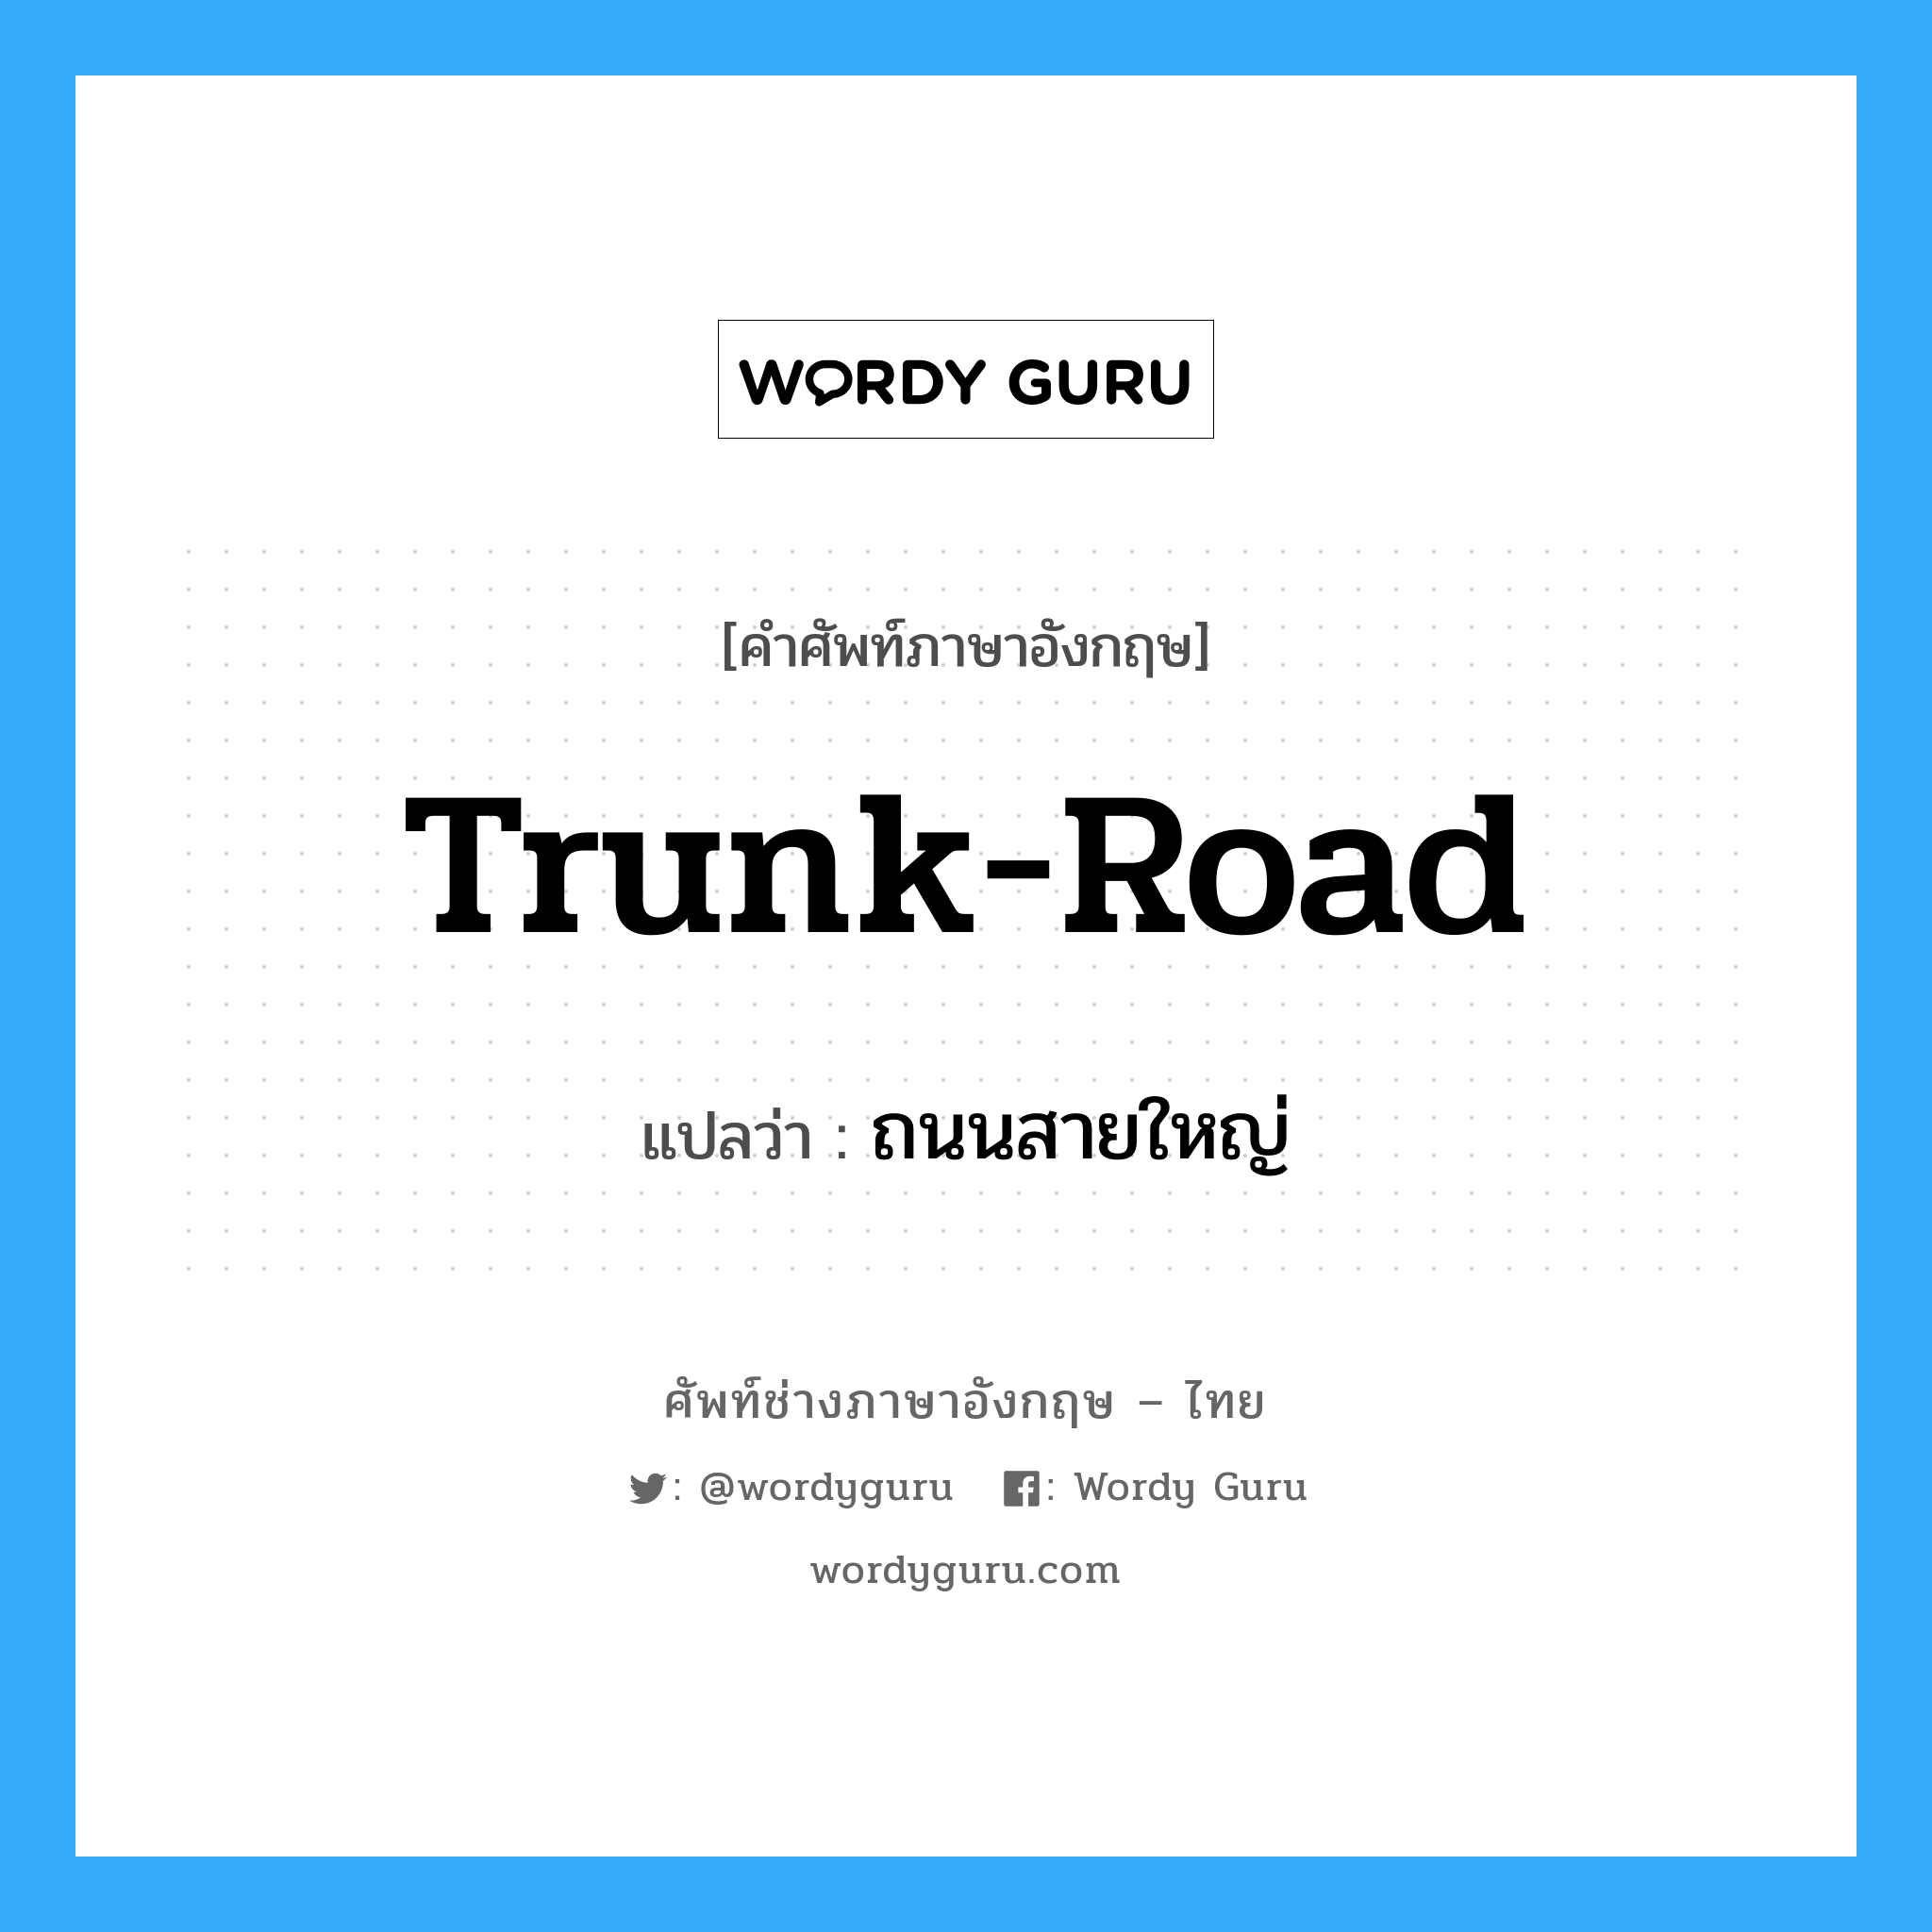 trunk-road แปลว่า?, คำศัพท์ช่างภาษาอังกฤษ - ไทย trunk-road คำศัพท์ภาษาอังกฤษ trunk-road แปลว่า ถนนสายใหญ่